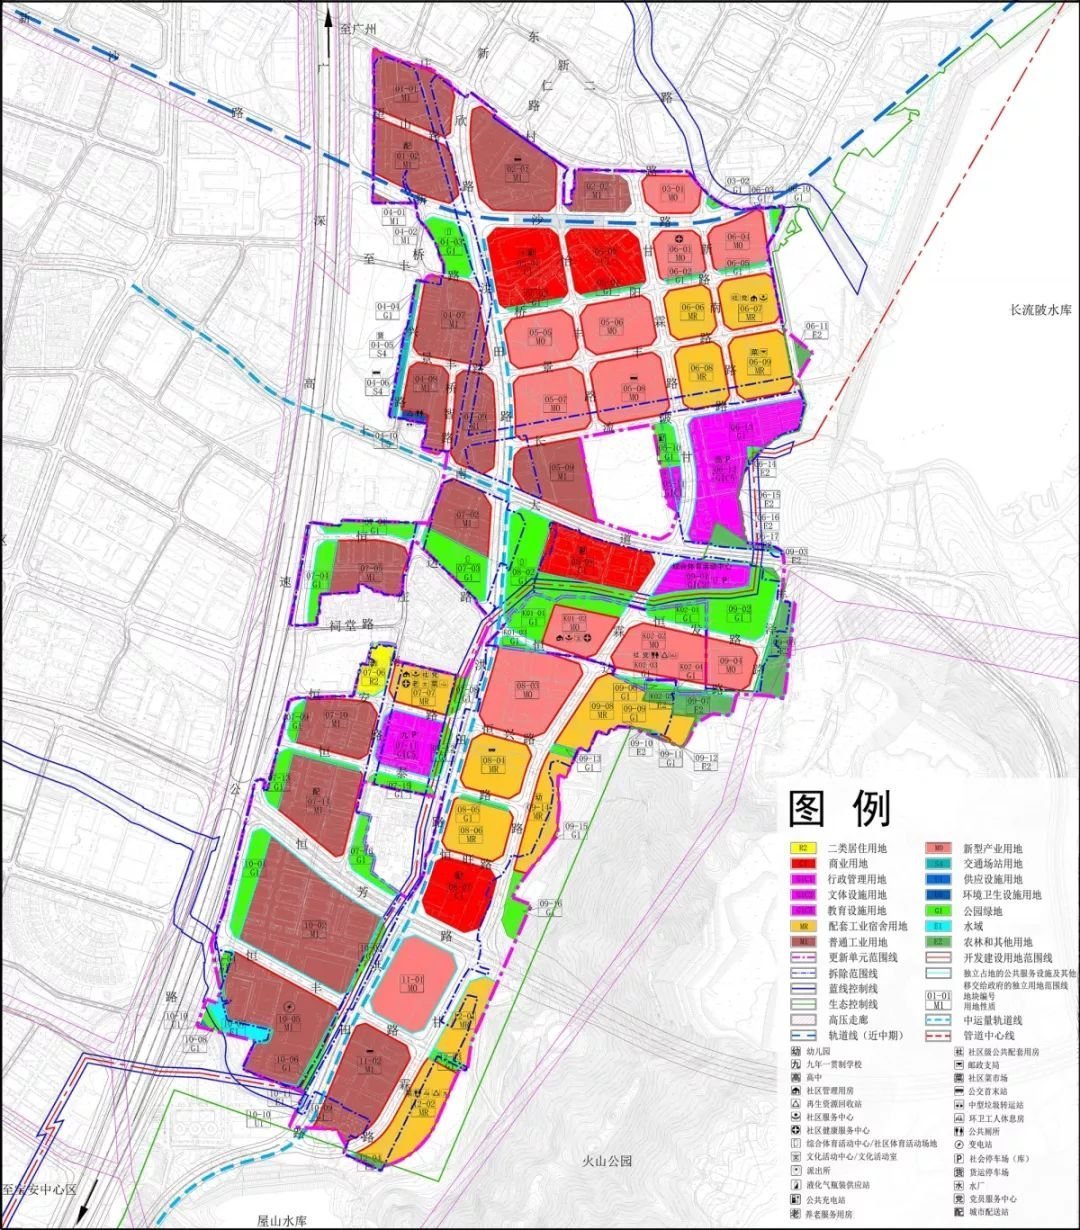 方舆 - 经济地理 - 全国由国务院审批城市总体规划的城市规划定位和城市规模统计名单 - Powered by phpwind